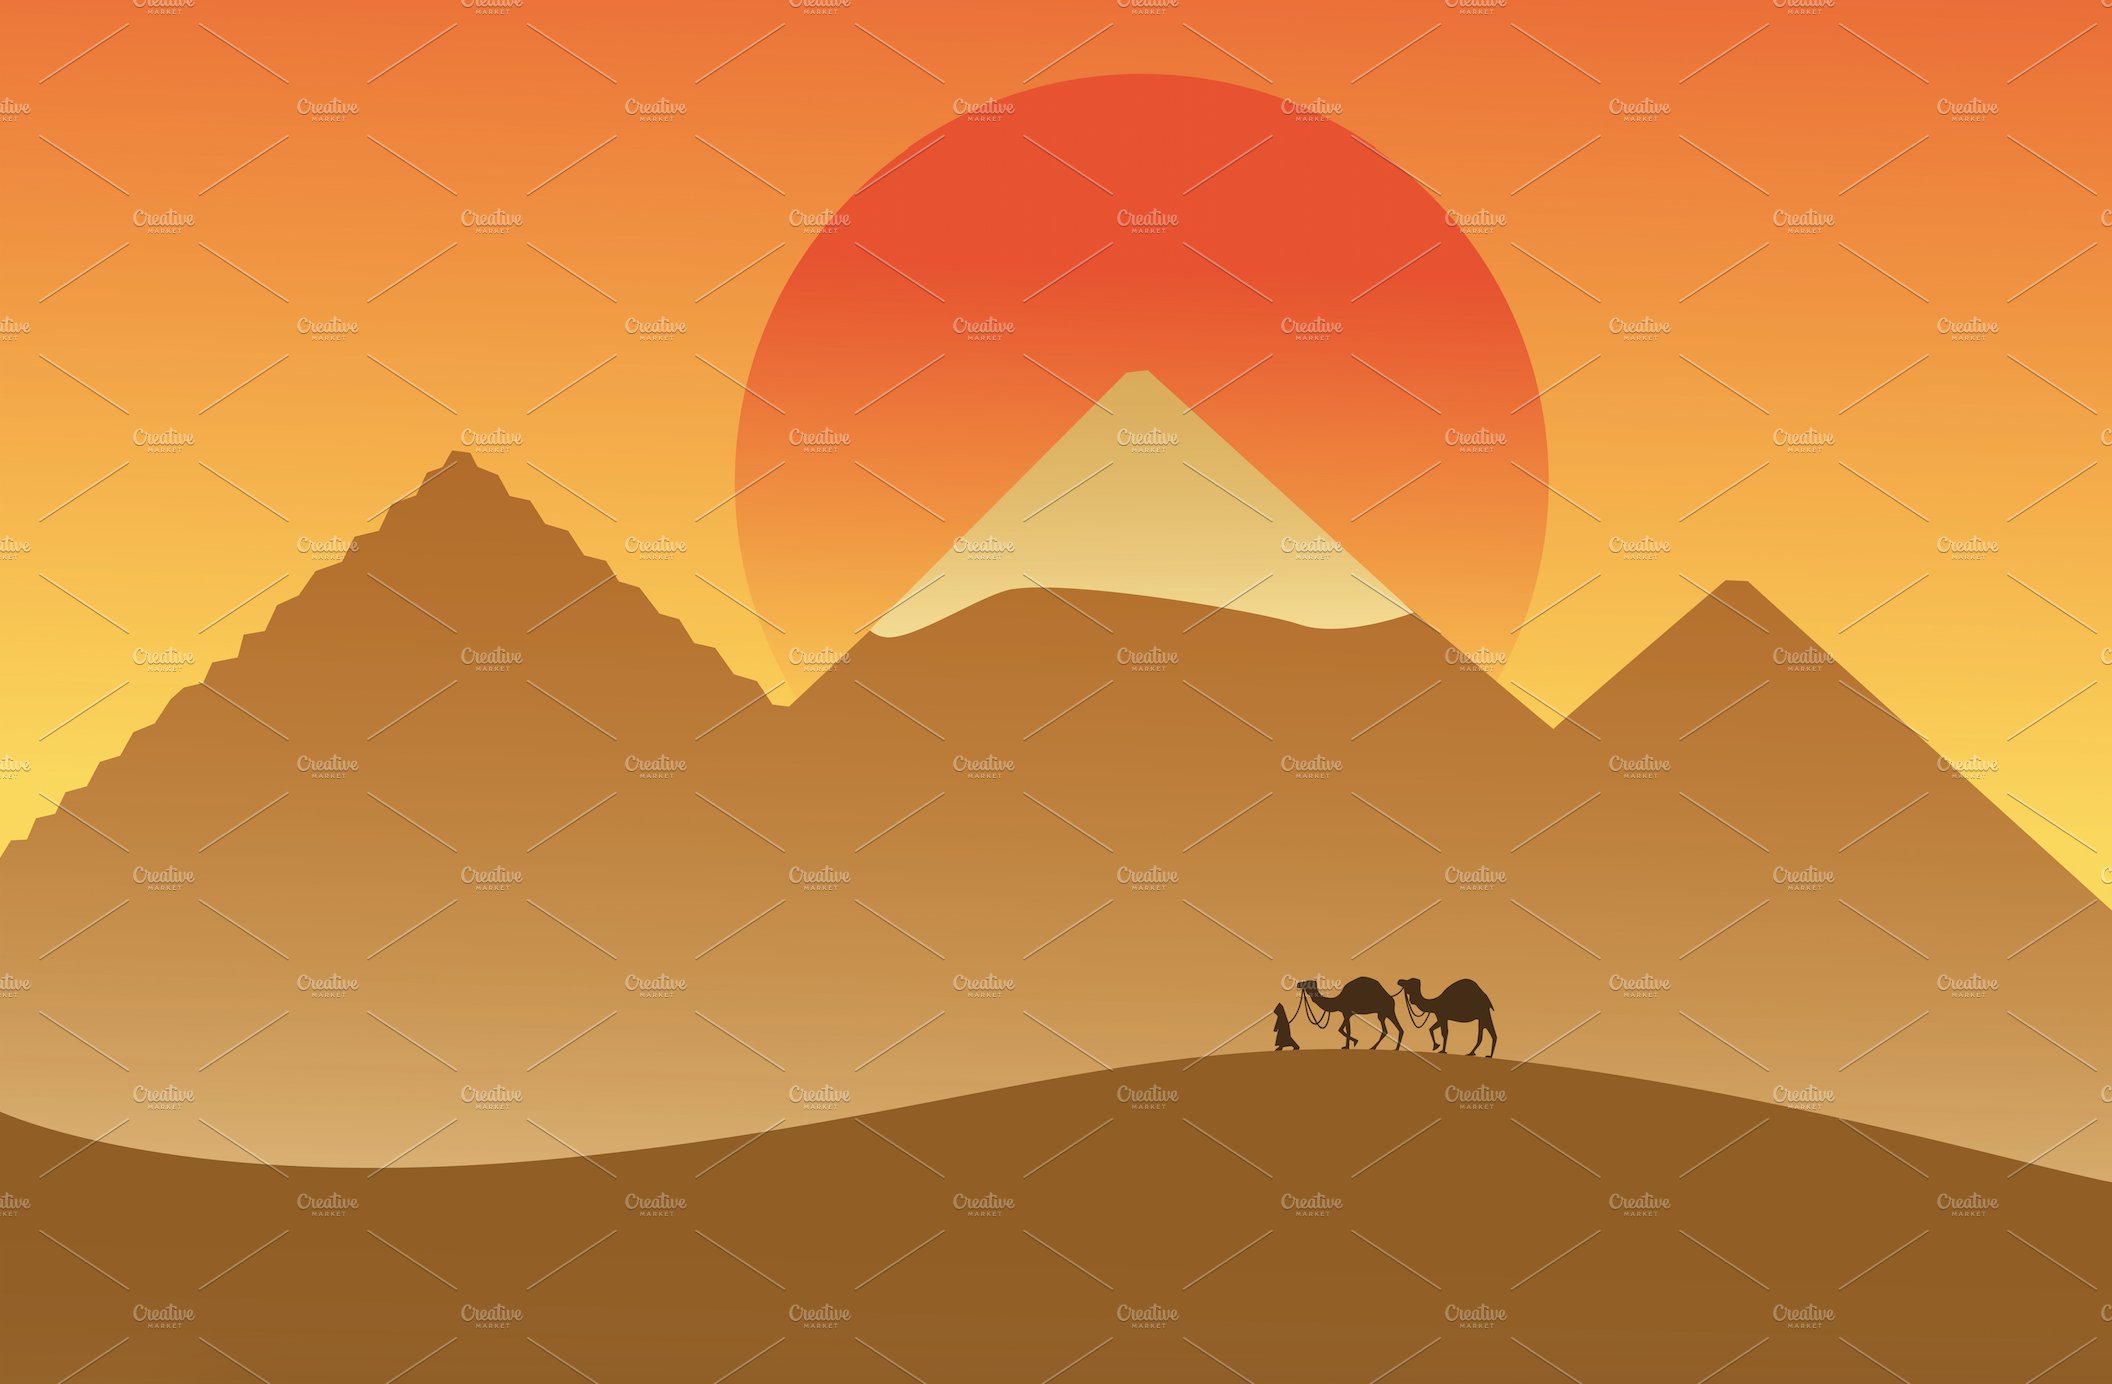 Caravan in desert. Egypt cover image.